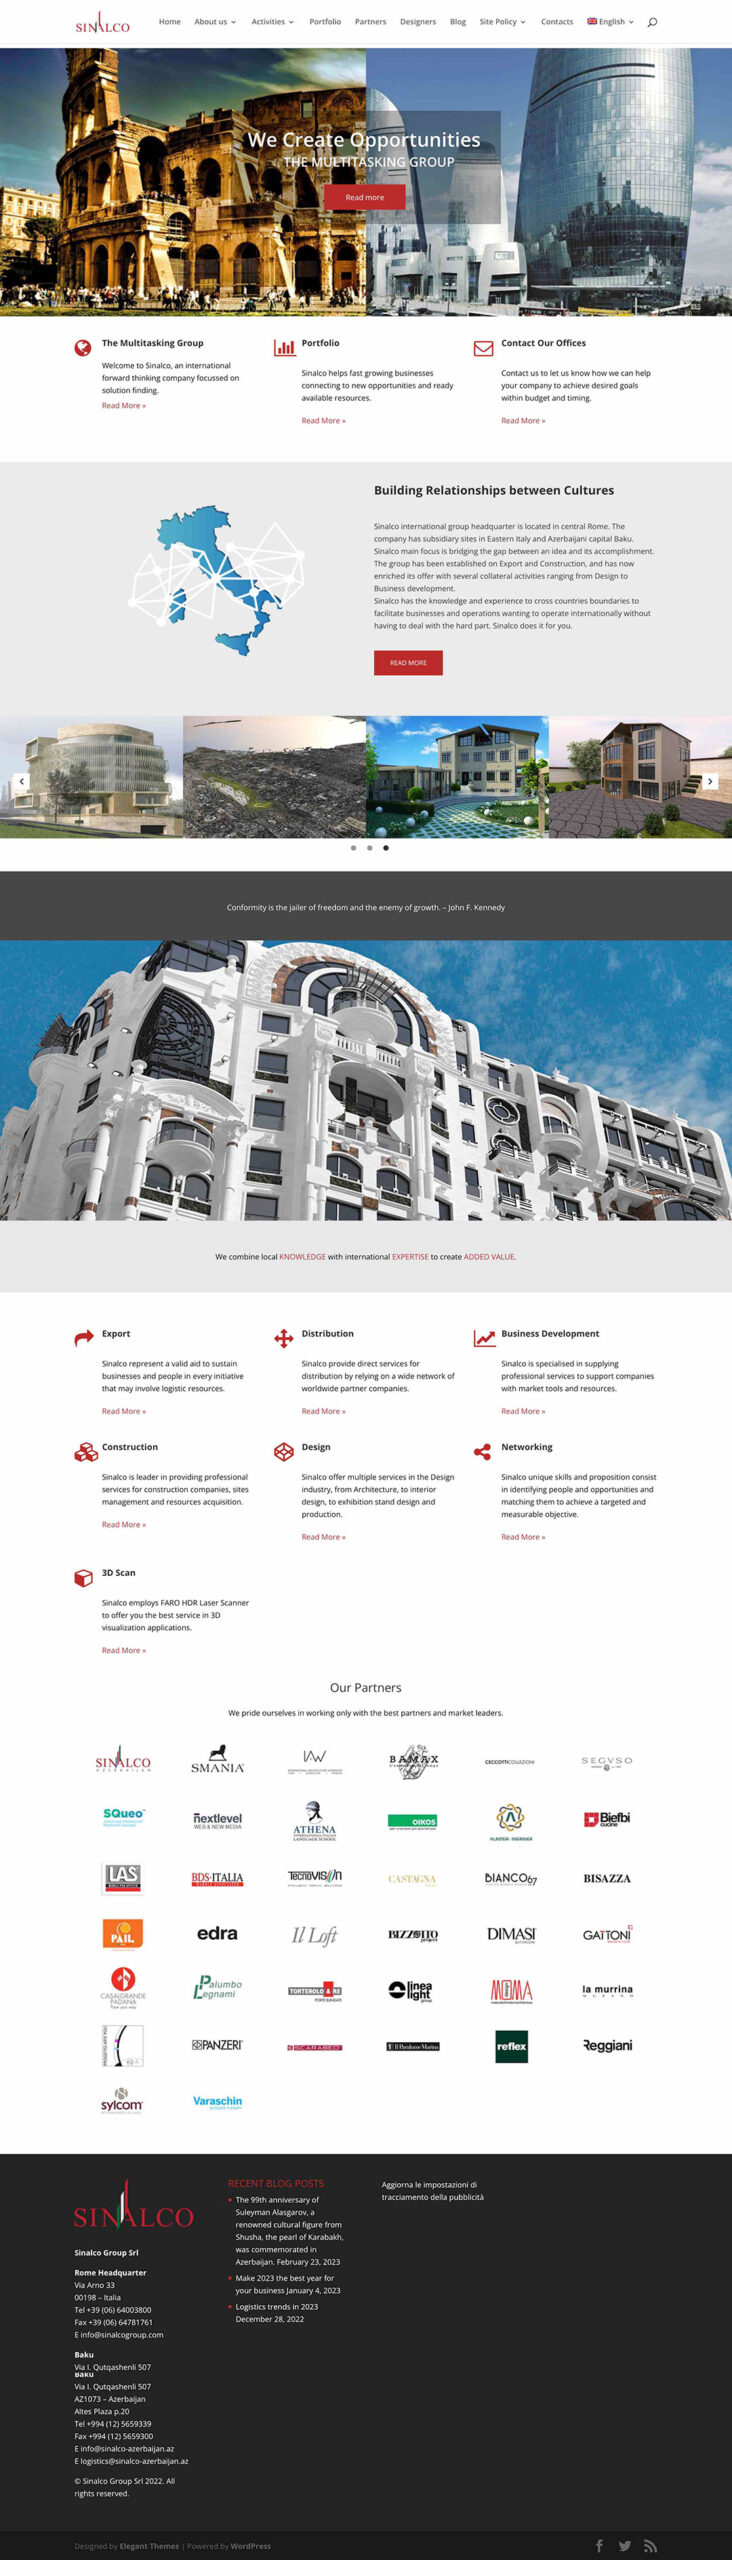 Nextlevel_Roma_Marketing_Costruzioni-Architettura_Sinalco-Group_Sito_Web_1080px_2